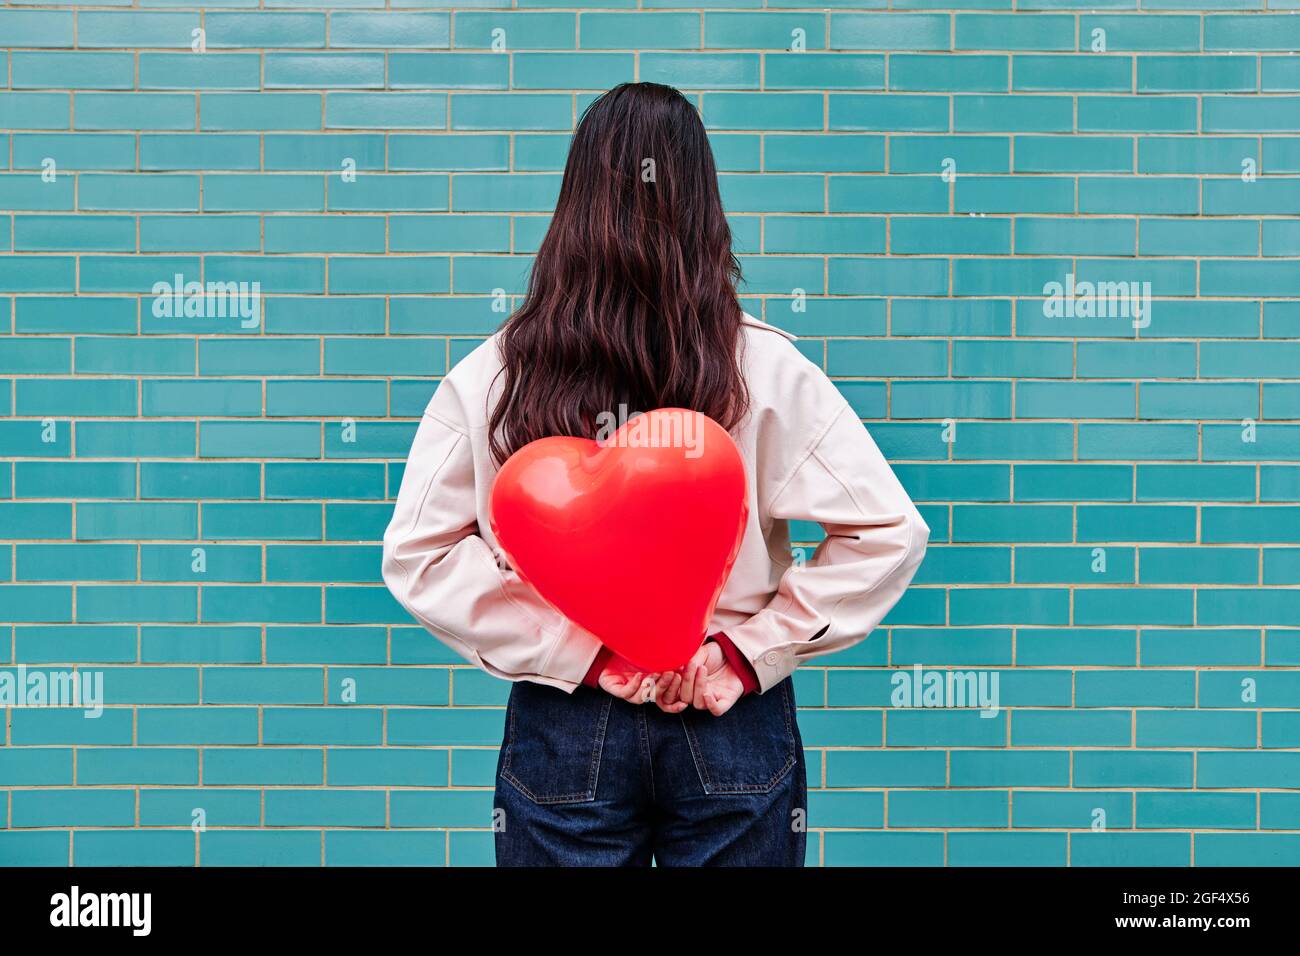 Junge Frau hält einen roten Herzballon hinter ihrem Rücken vor einer Ziegelwand Stockfoto